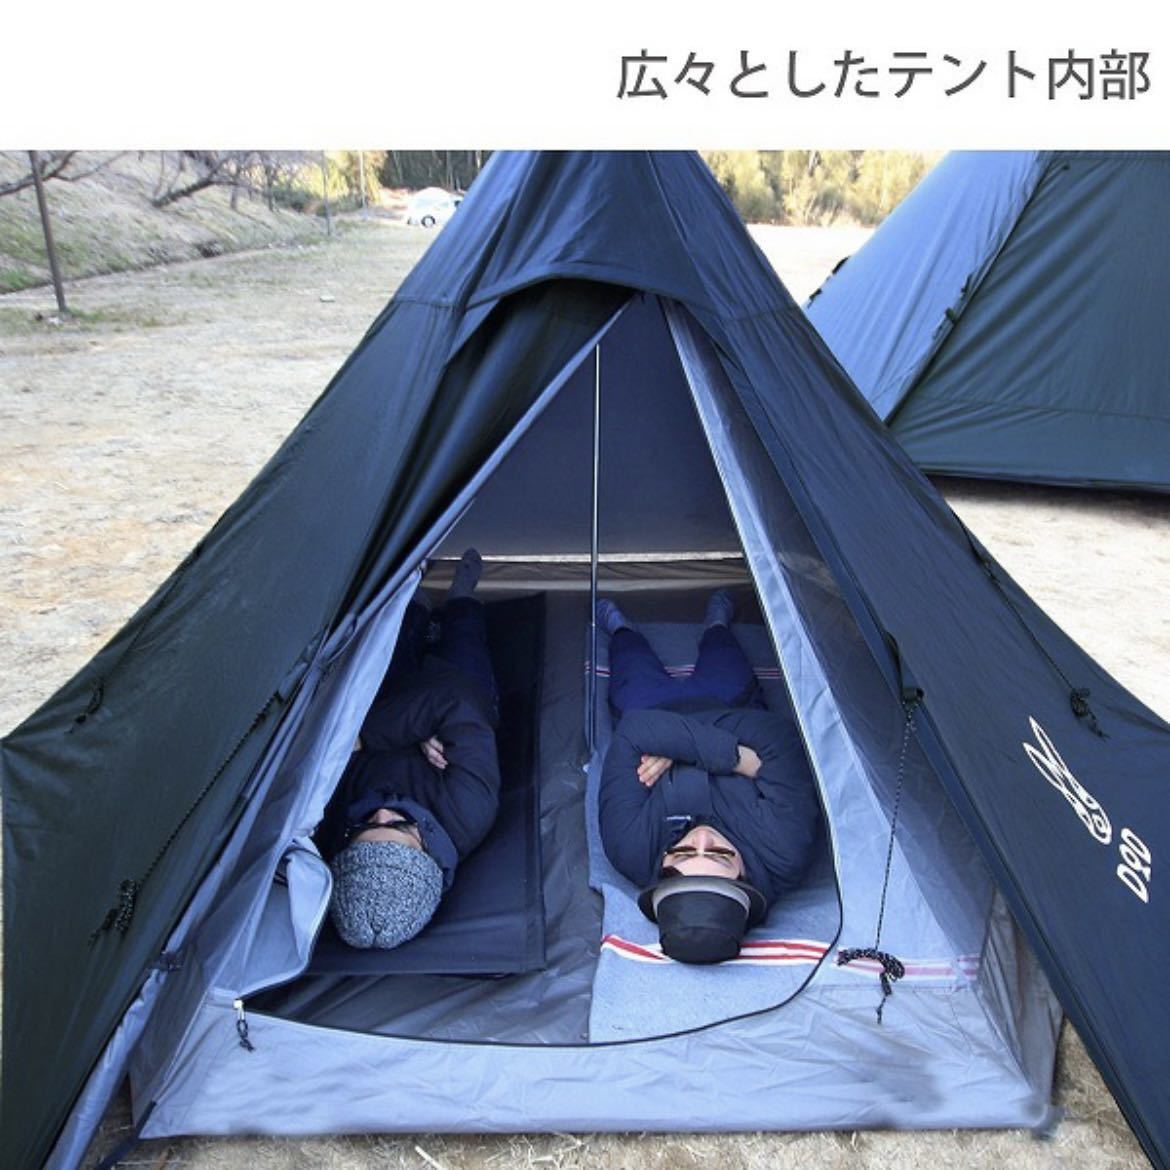 DOD ワンポールテントS 3人用 テント ST3-44-BK ブラック アウトドア キャンプ レジャー BBQ バーベキュー 2020年2月新仕様版 